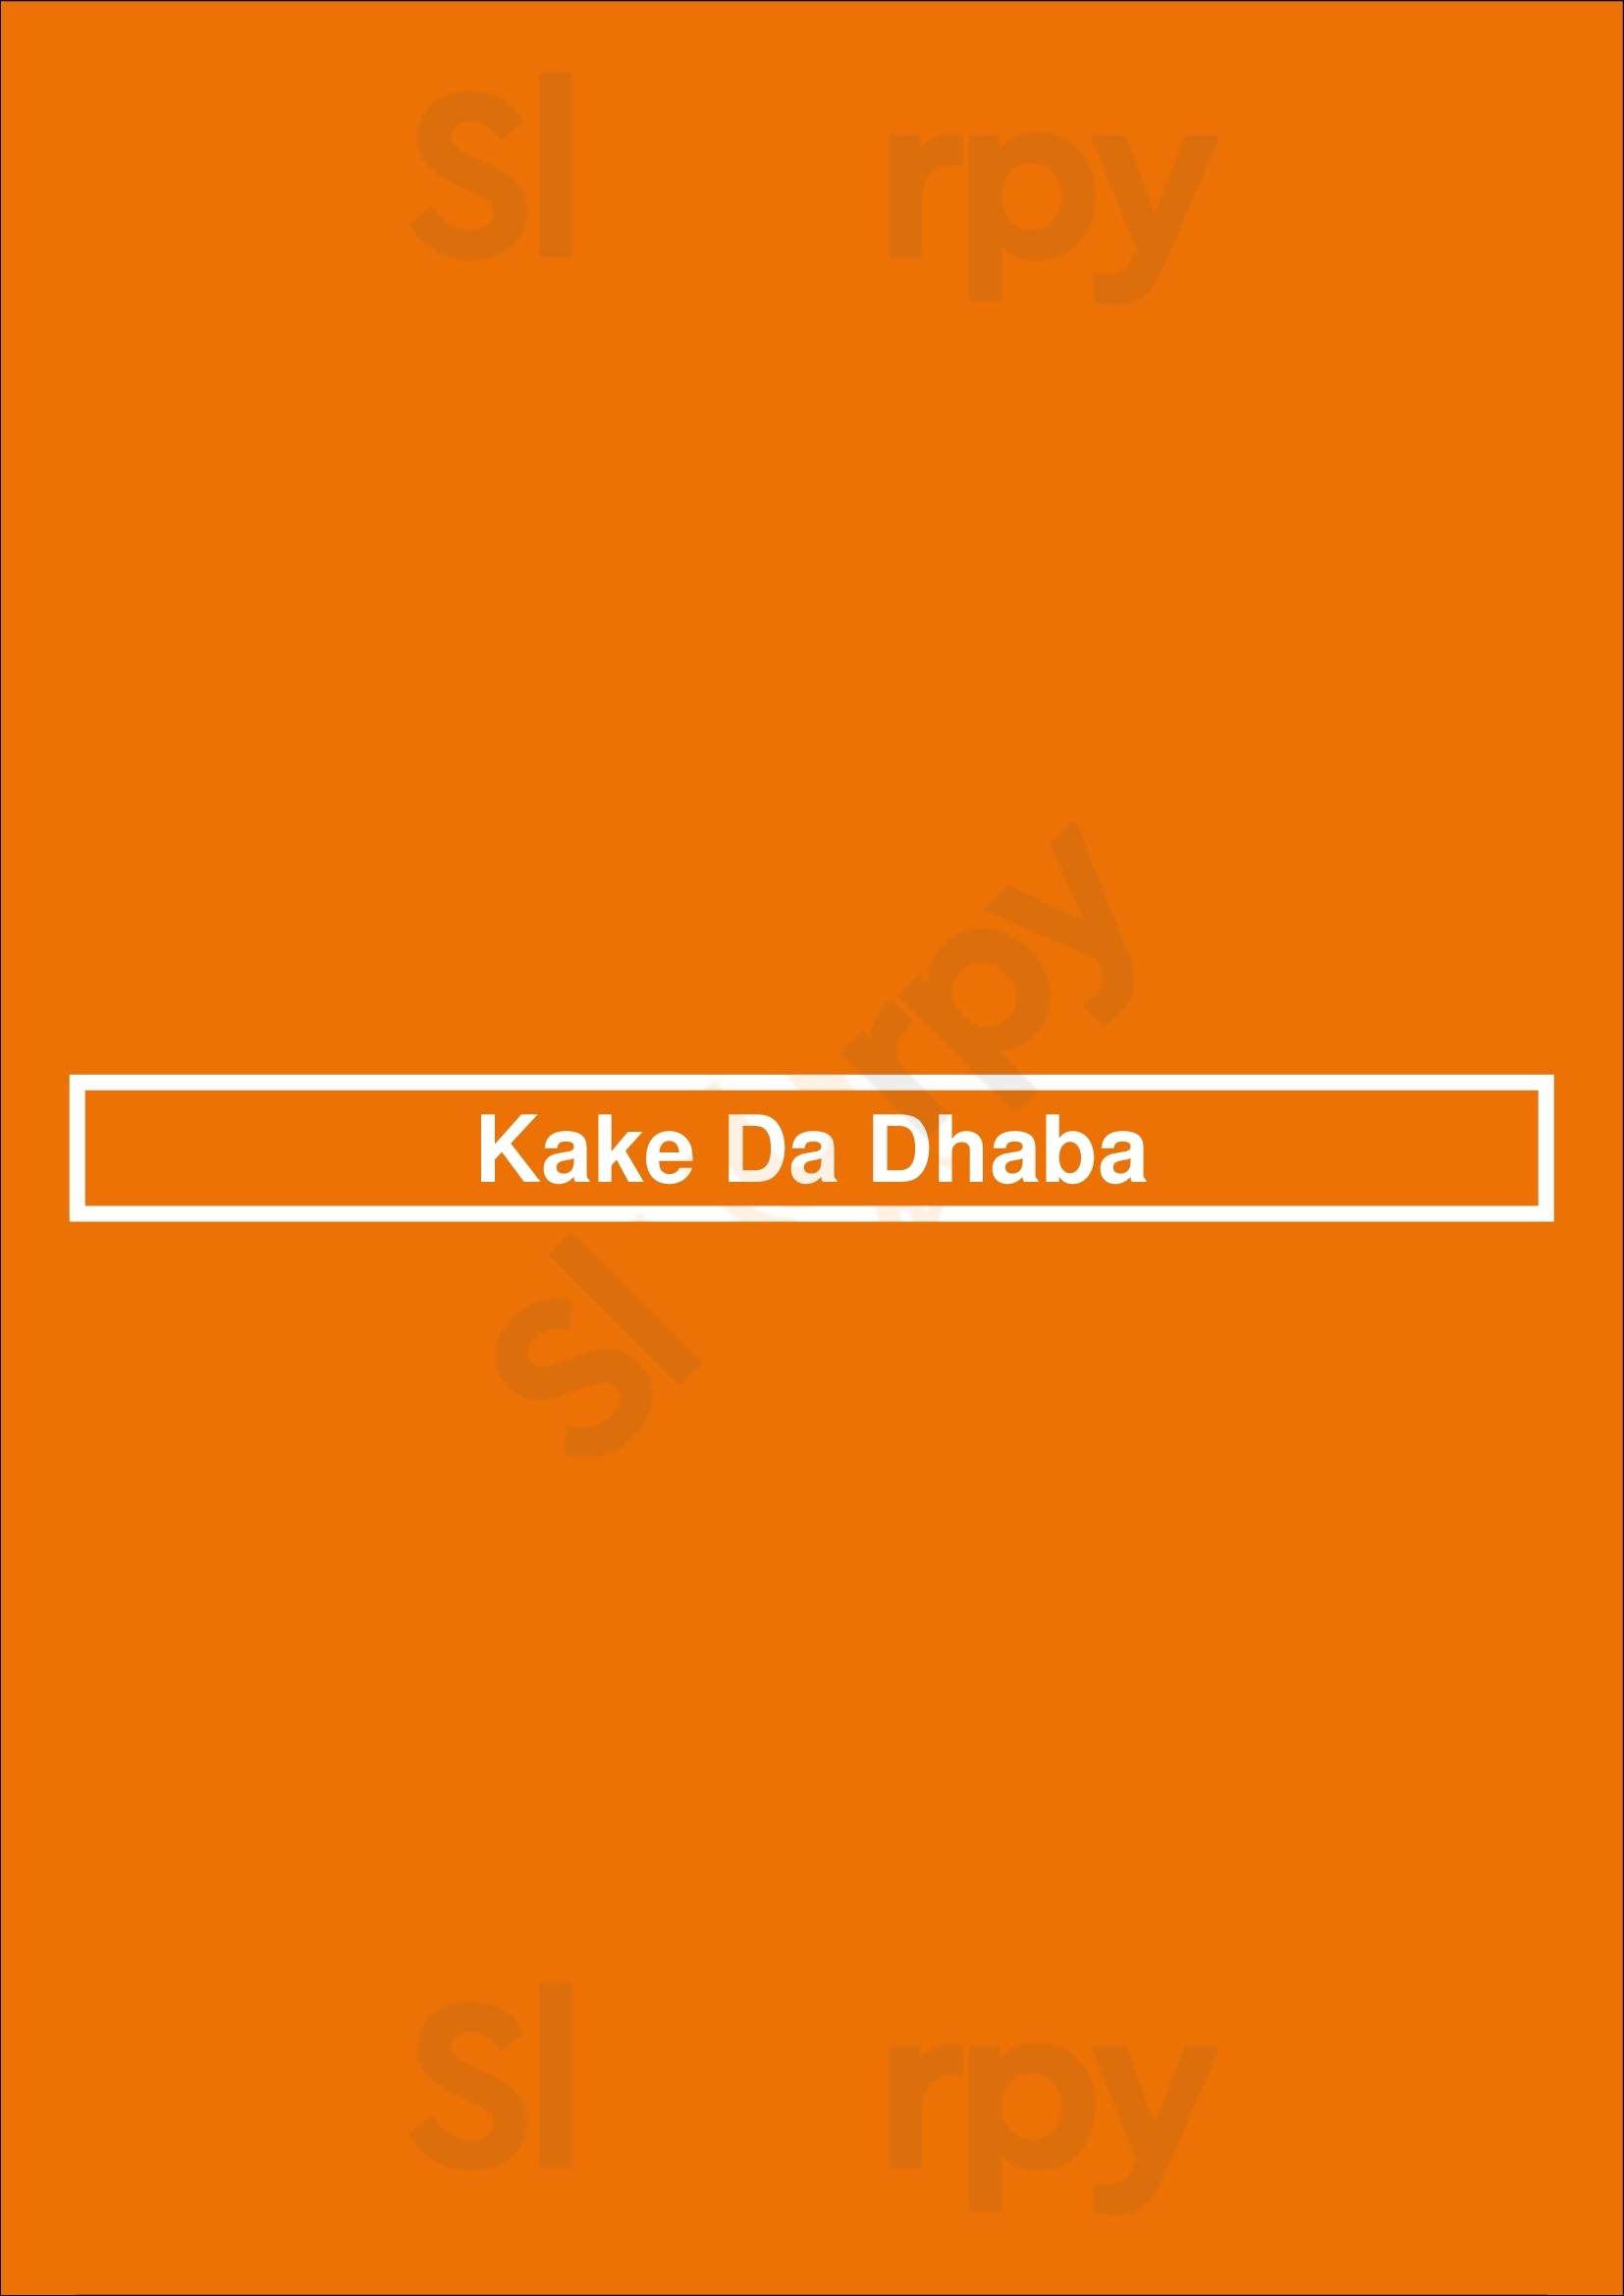 Kake Da Dhaba St Kilda Menu - 1